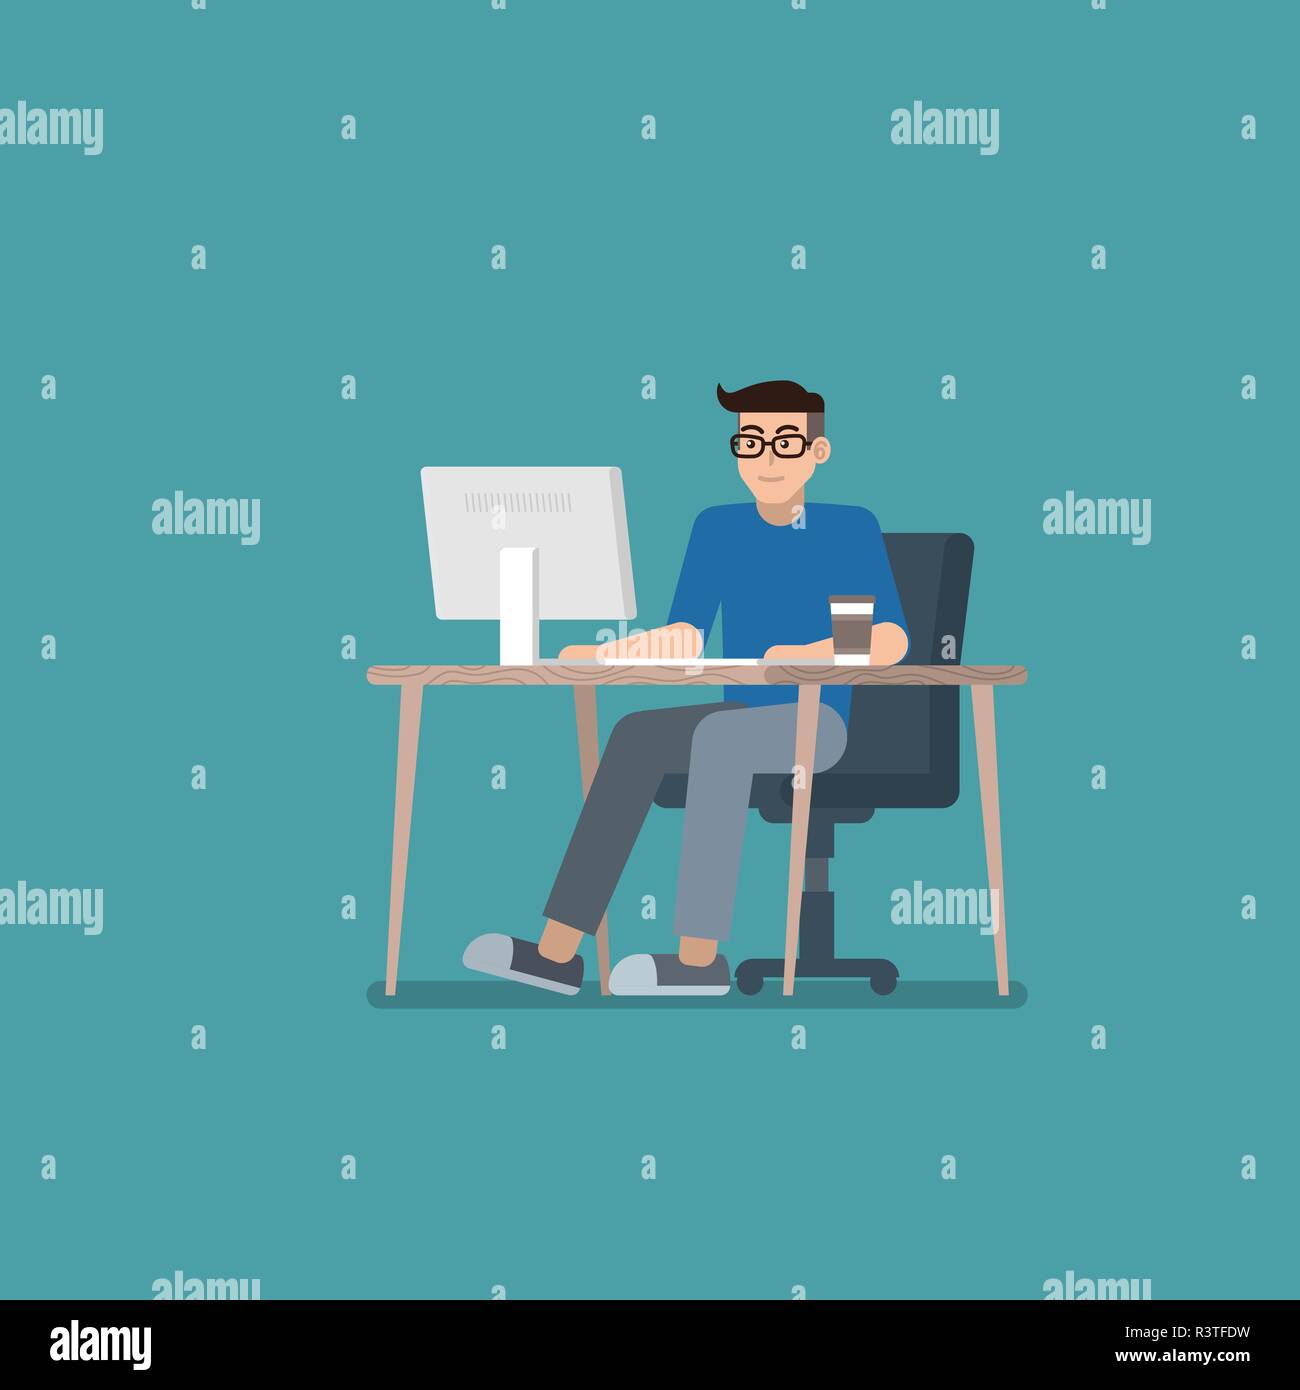 Jeune homme à lunettes dans les tenues de travailler sur ordinateur de bureau au bureau de style plat Illustration de Vecteur